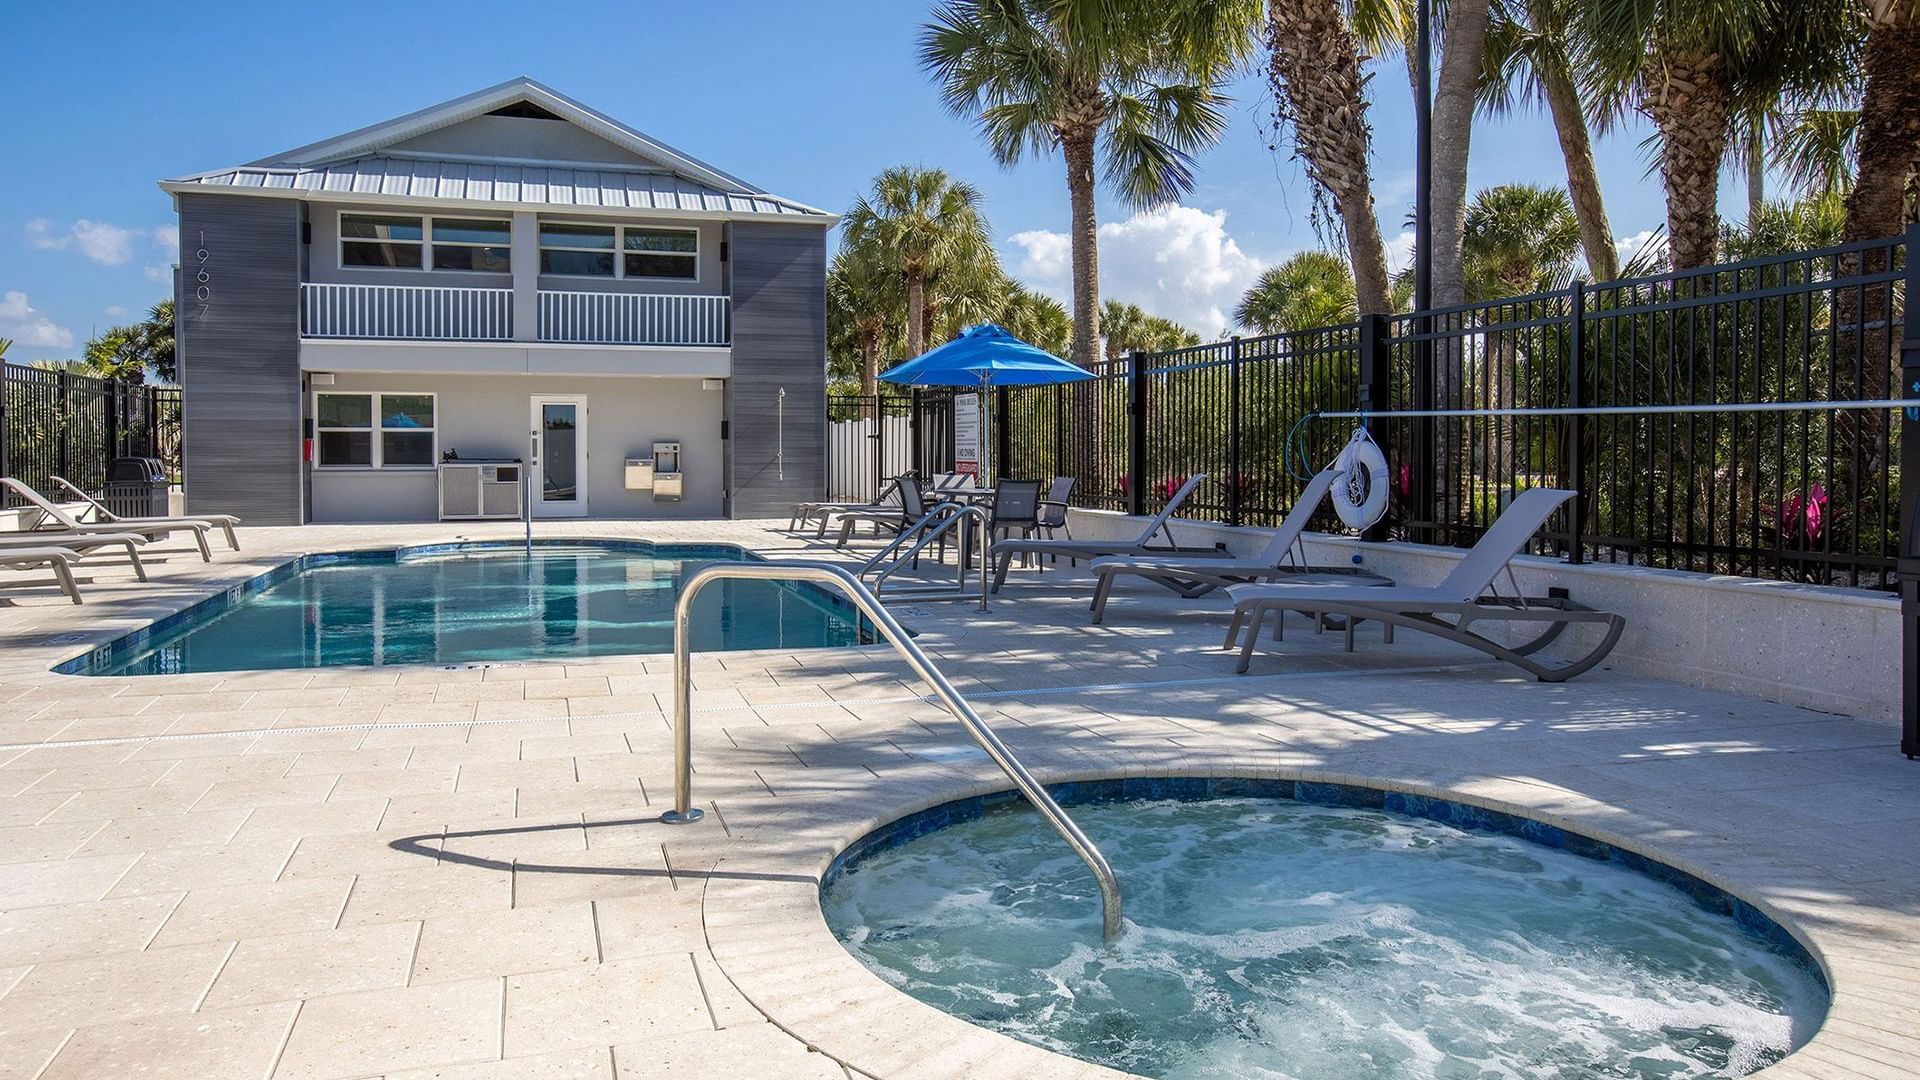  Hot Tub & Swimming Pool at Legacy Vacation Resorts 